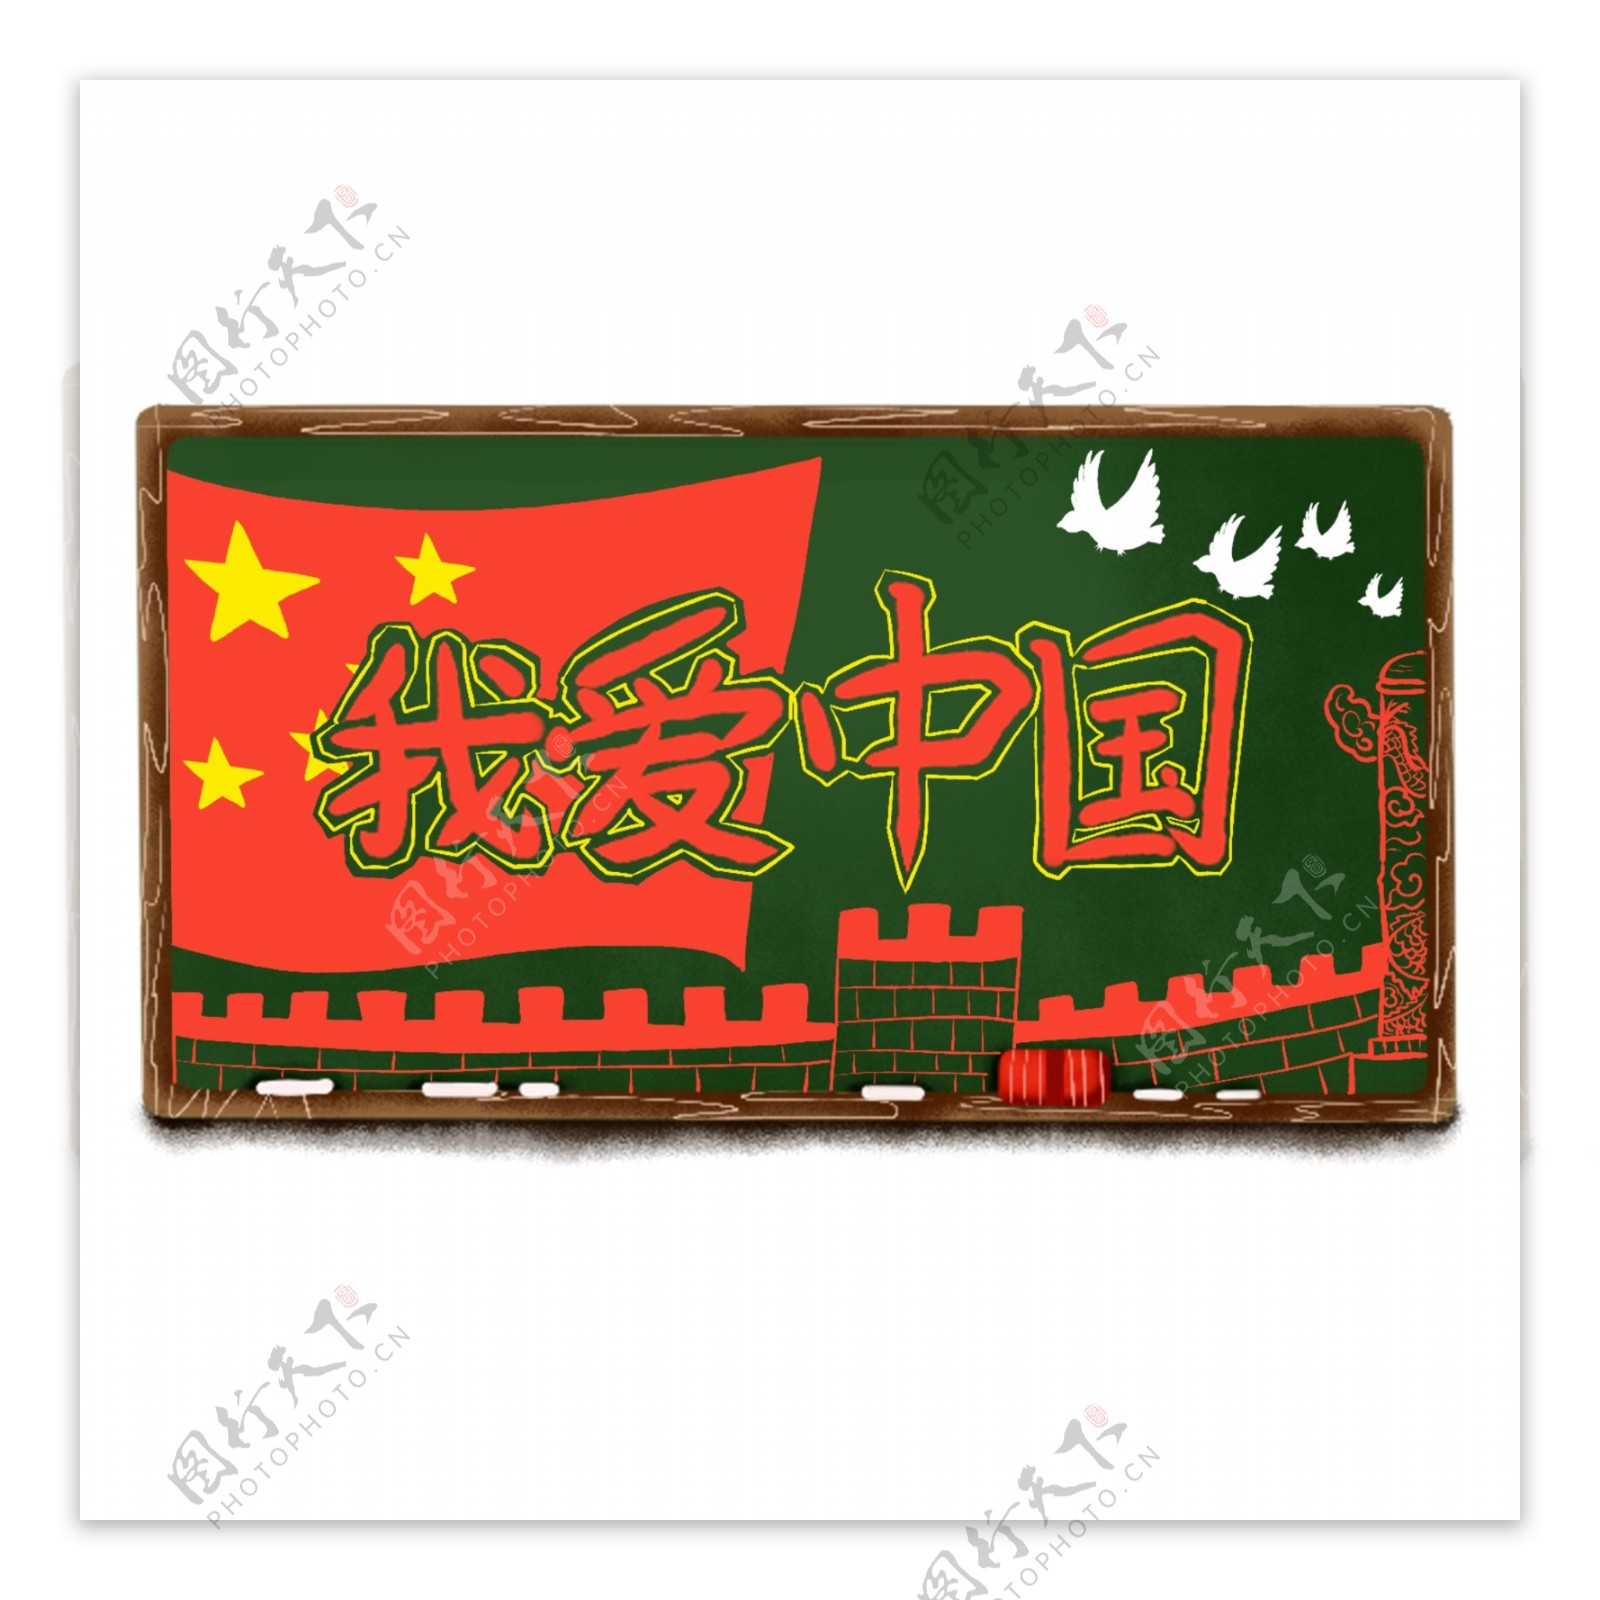 原创手绘黑板粉笔我爱中国